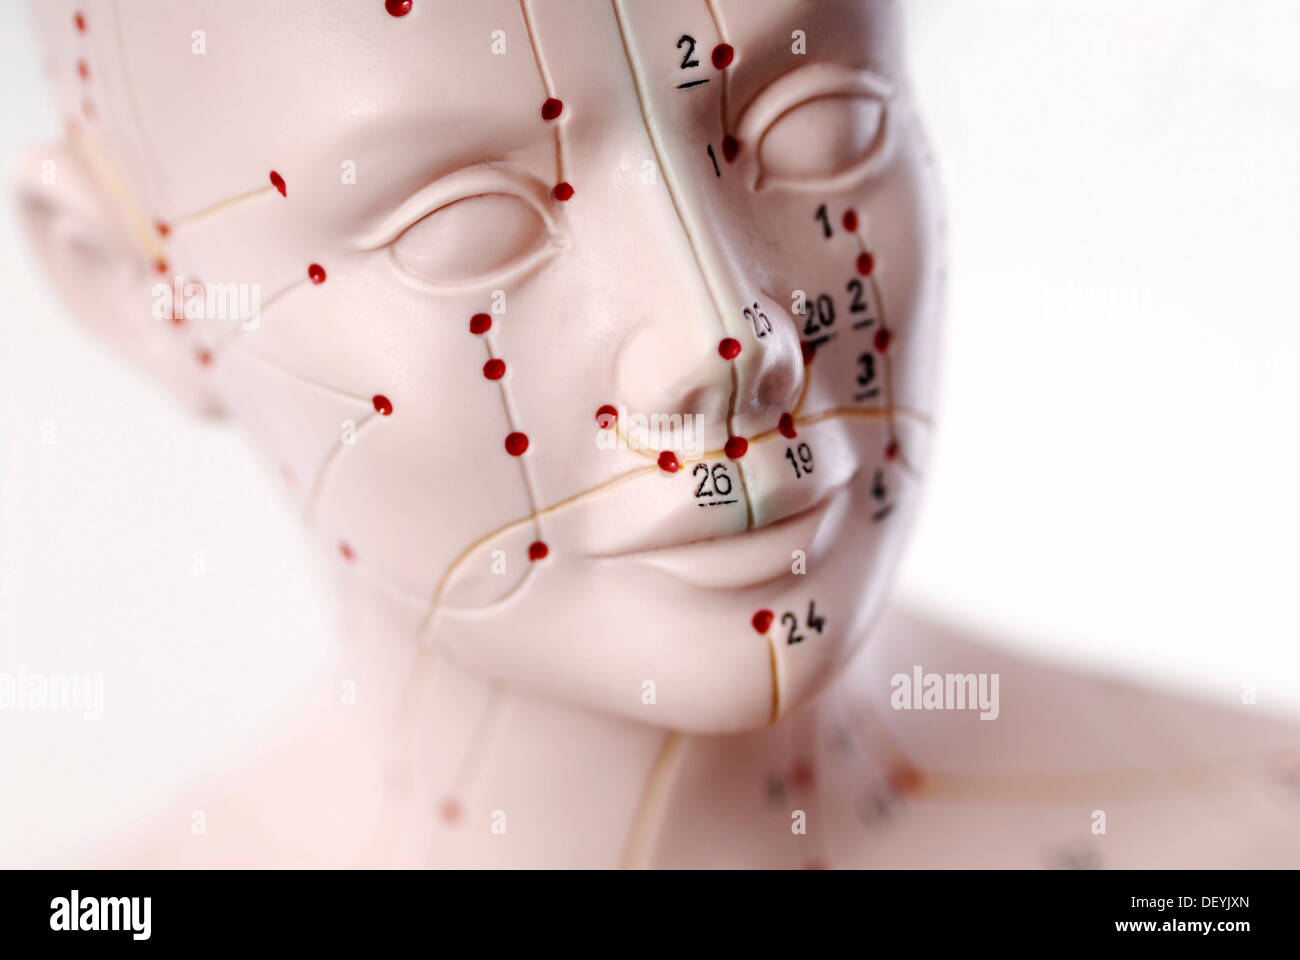 Modèle anatomique, tête avec points d'acupuncture Banque D'Images